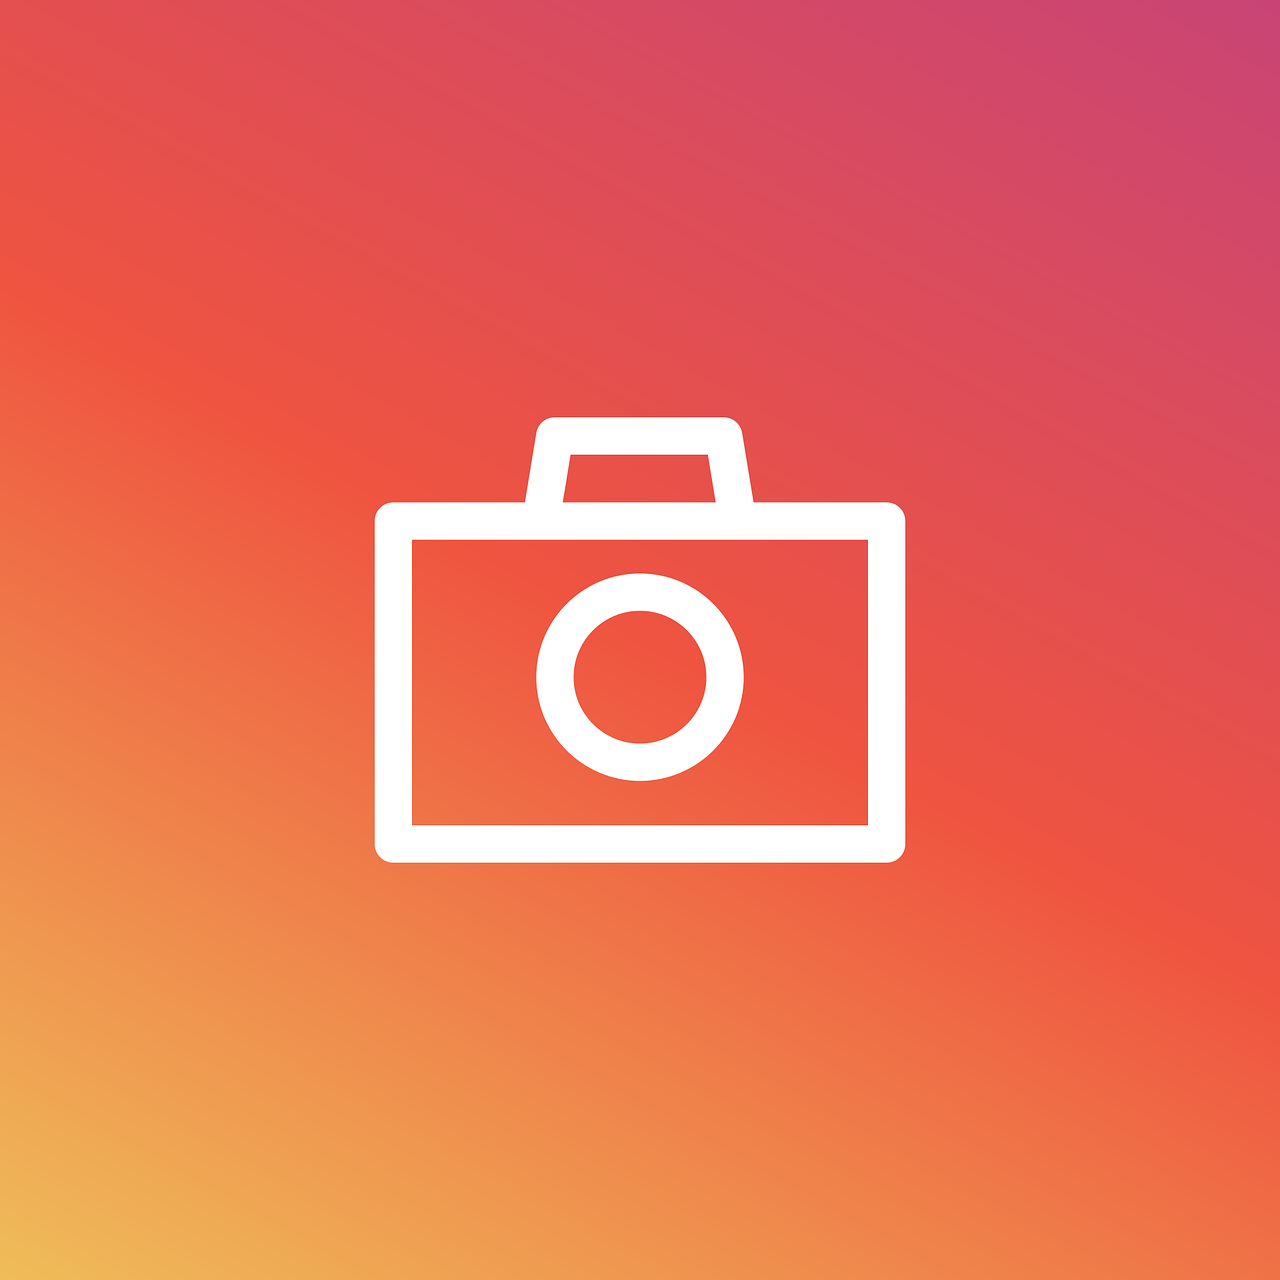 Instagram, Fotoaparatas, Piktograma, Nuotrauka, Hipster, Technologija, Nuotrauka, Fotografija, Filmas, Vintage